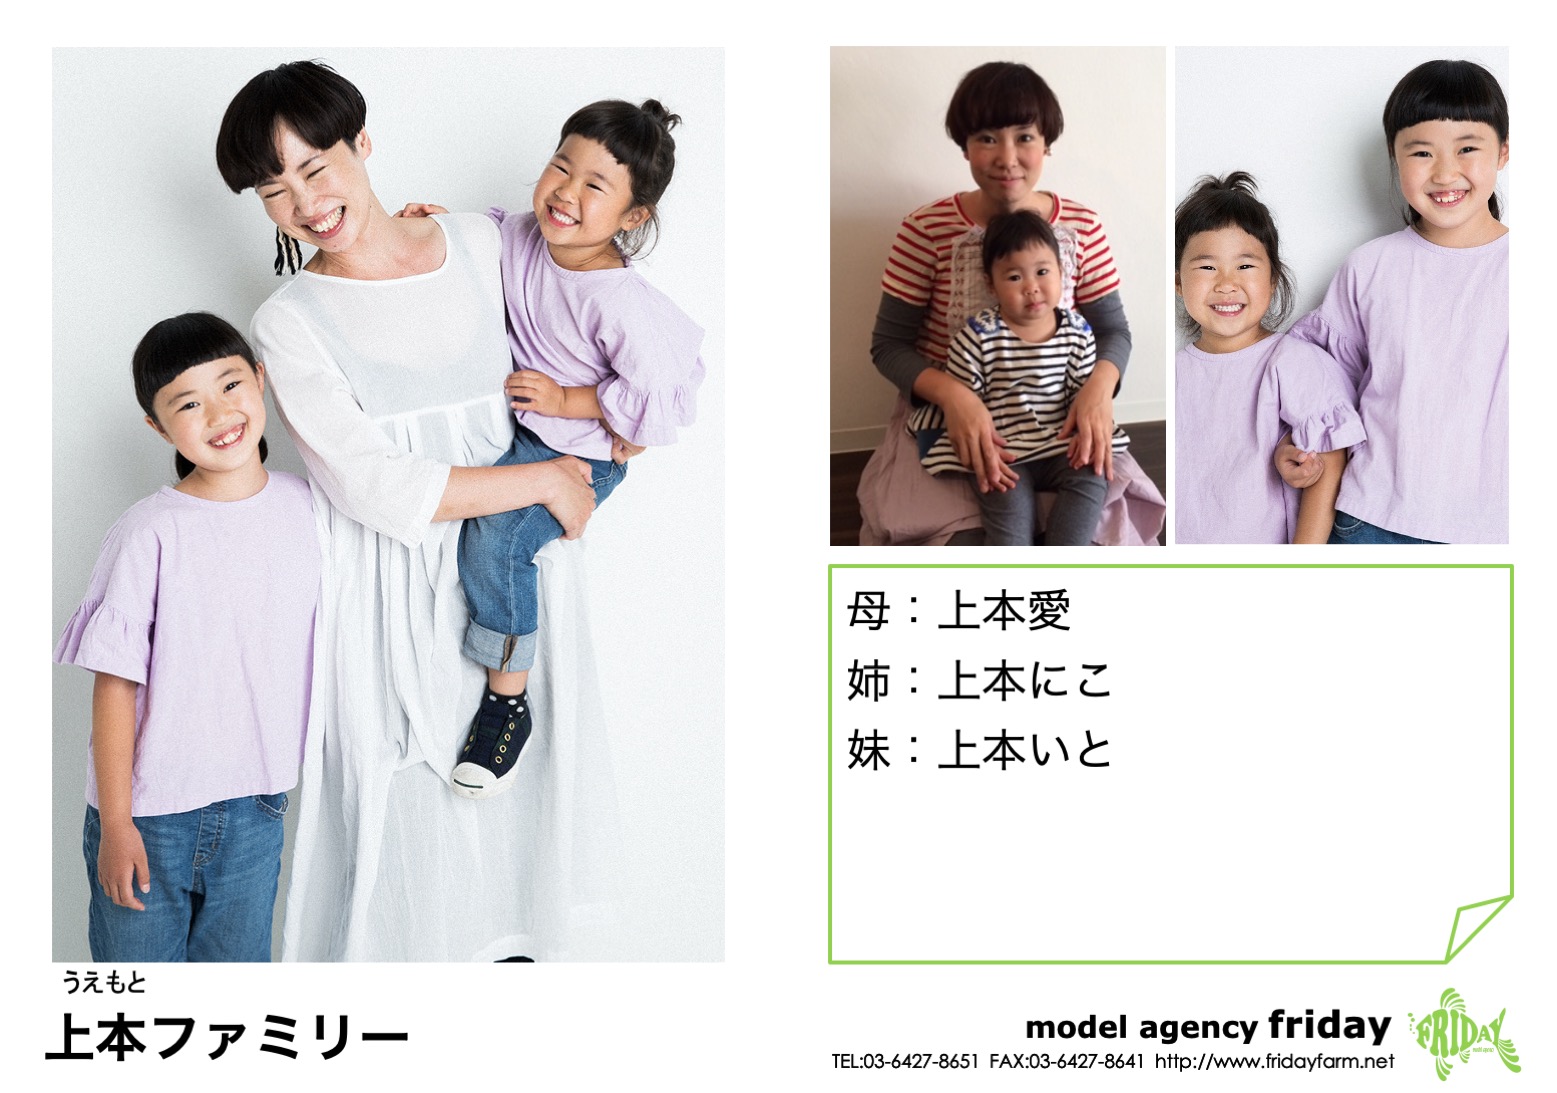 上本ファミリー - Uemoto Family | model agency friday